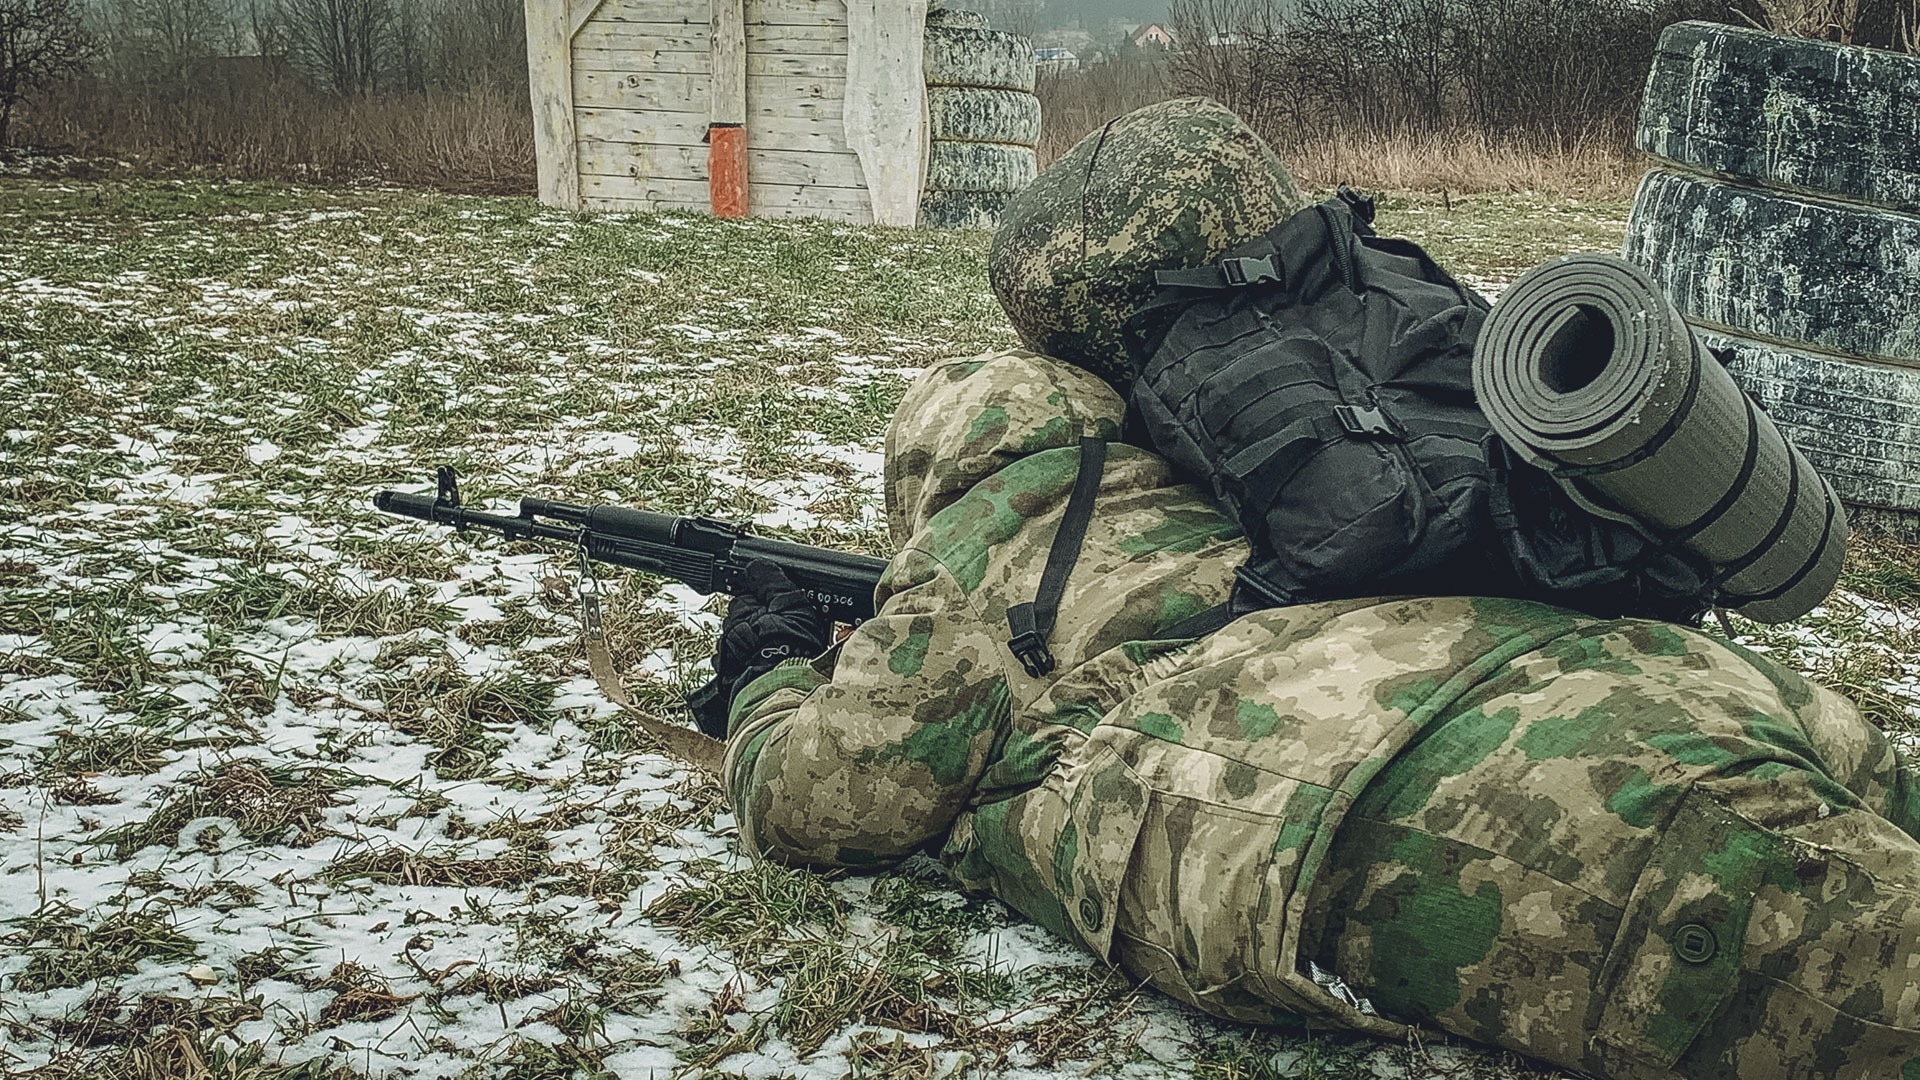 Гладков опроверг слухи про увеличение обстрелов и заход украинской ДРГ в область